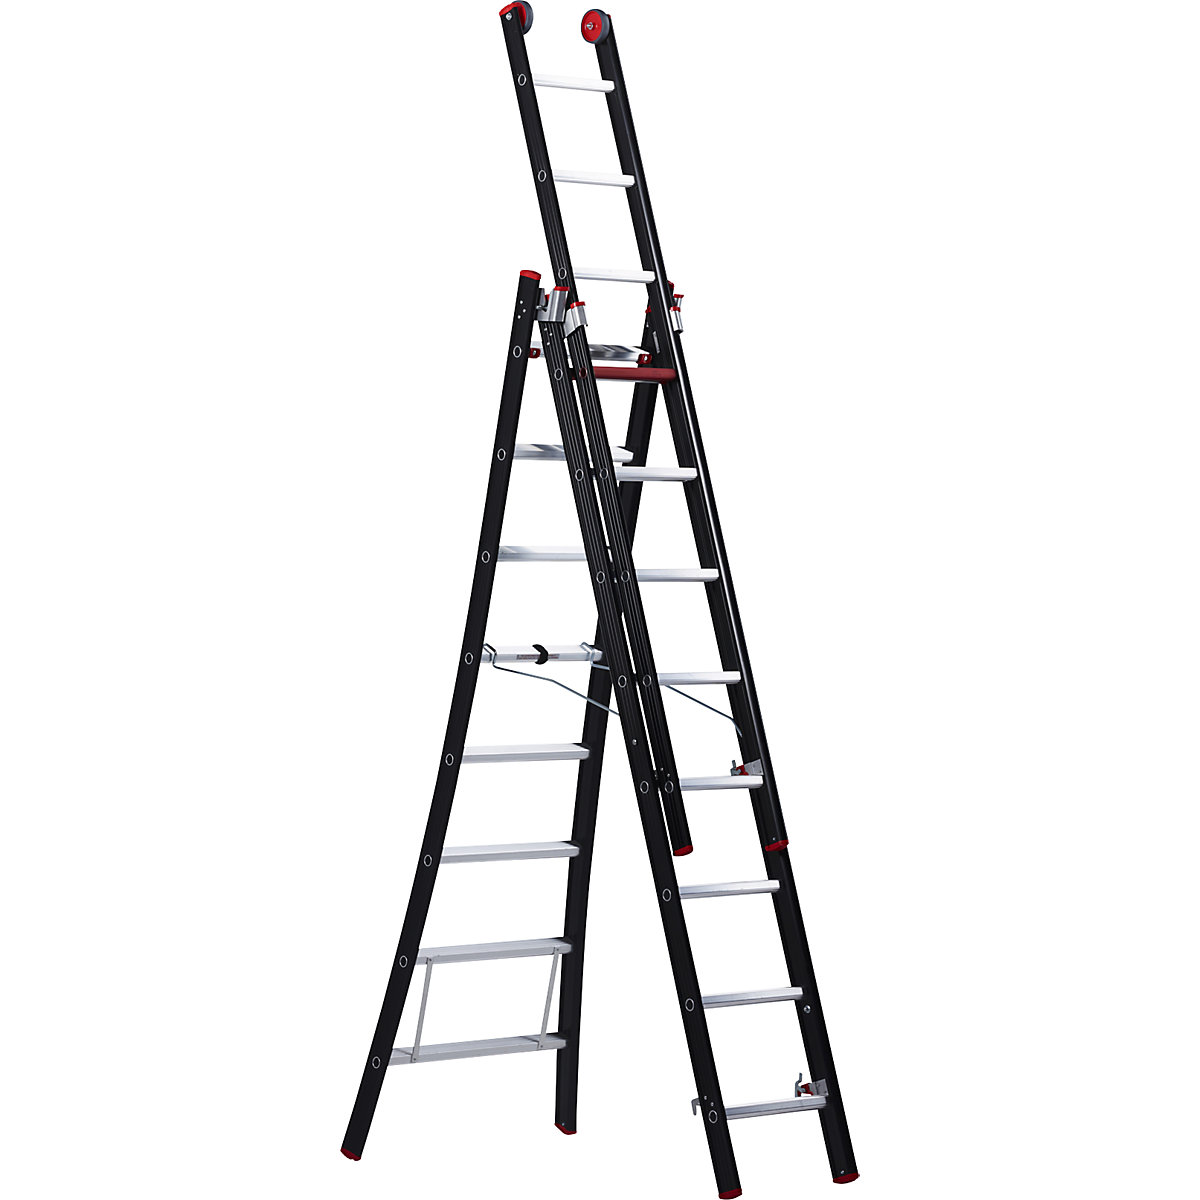 NEVADA multi purpose ladder - Altrex